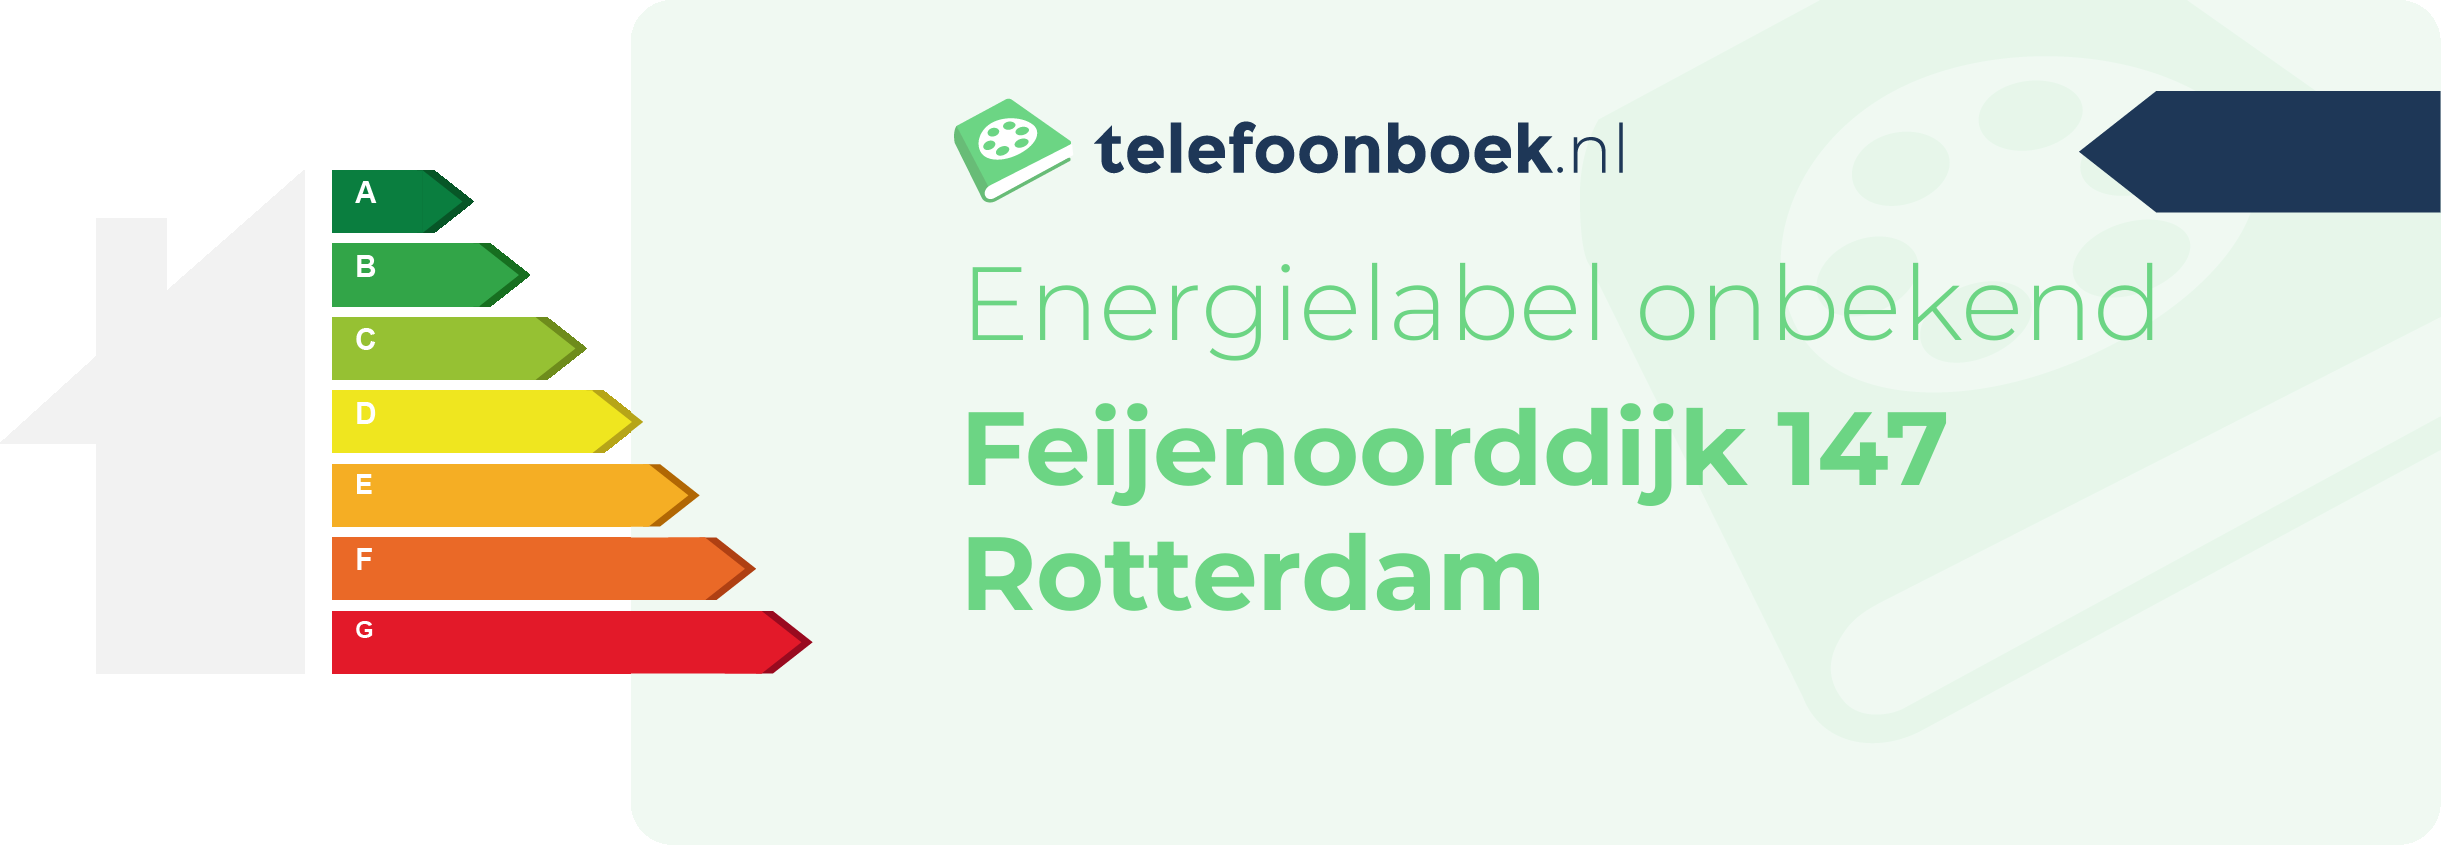 Energielabel Feijenoorddijk 147 Rotterdam